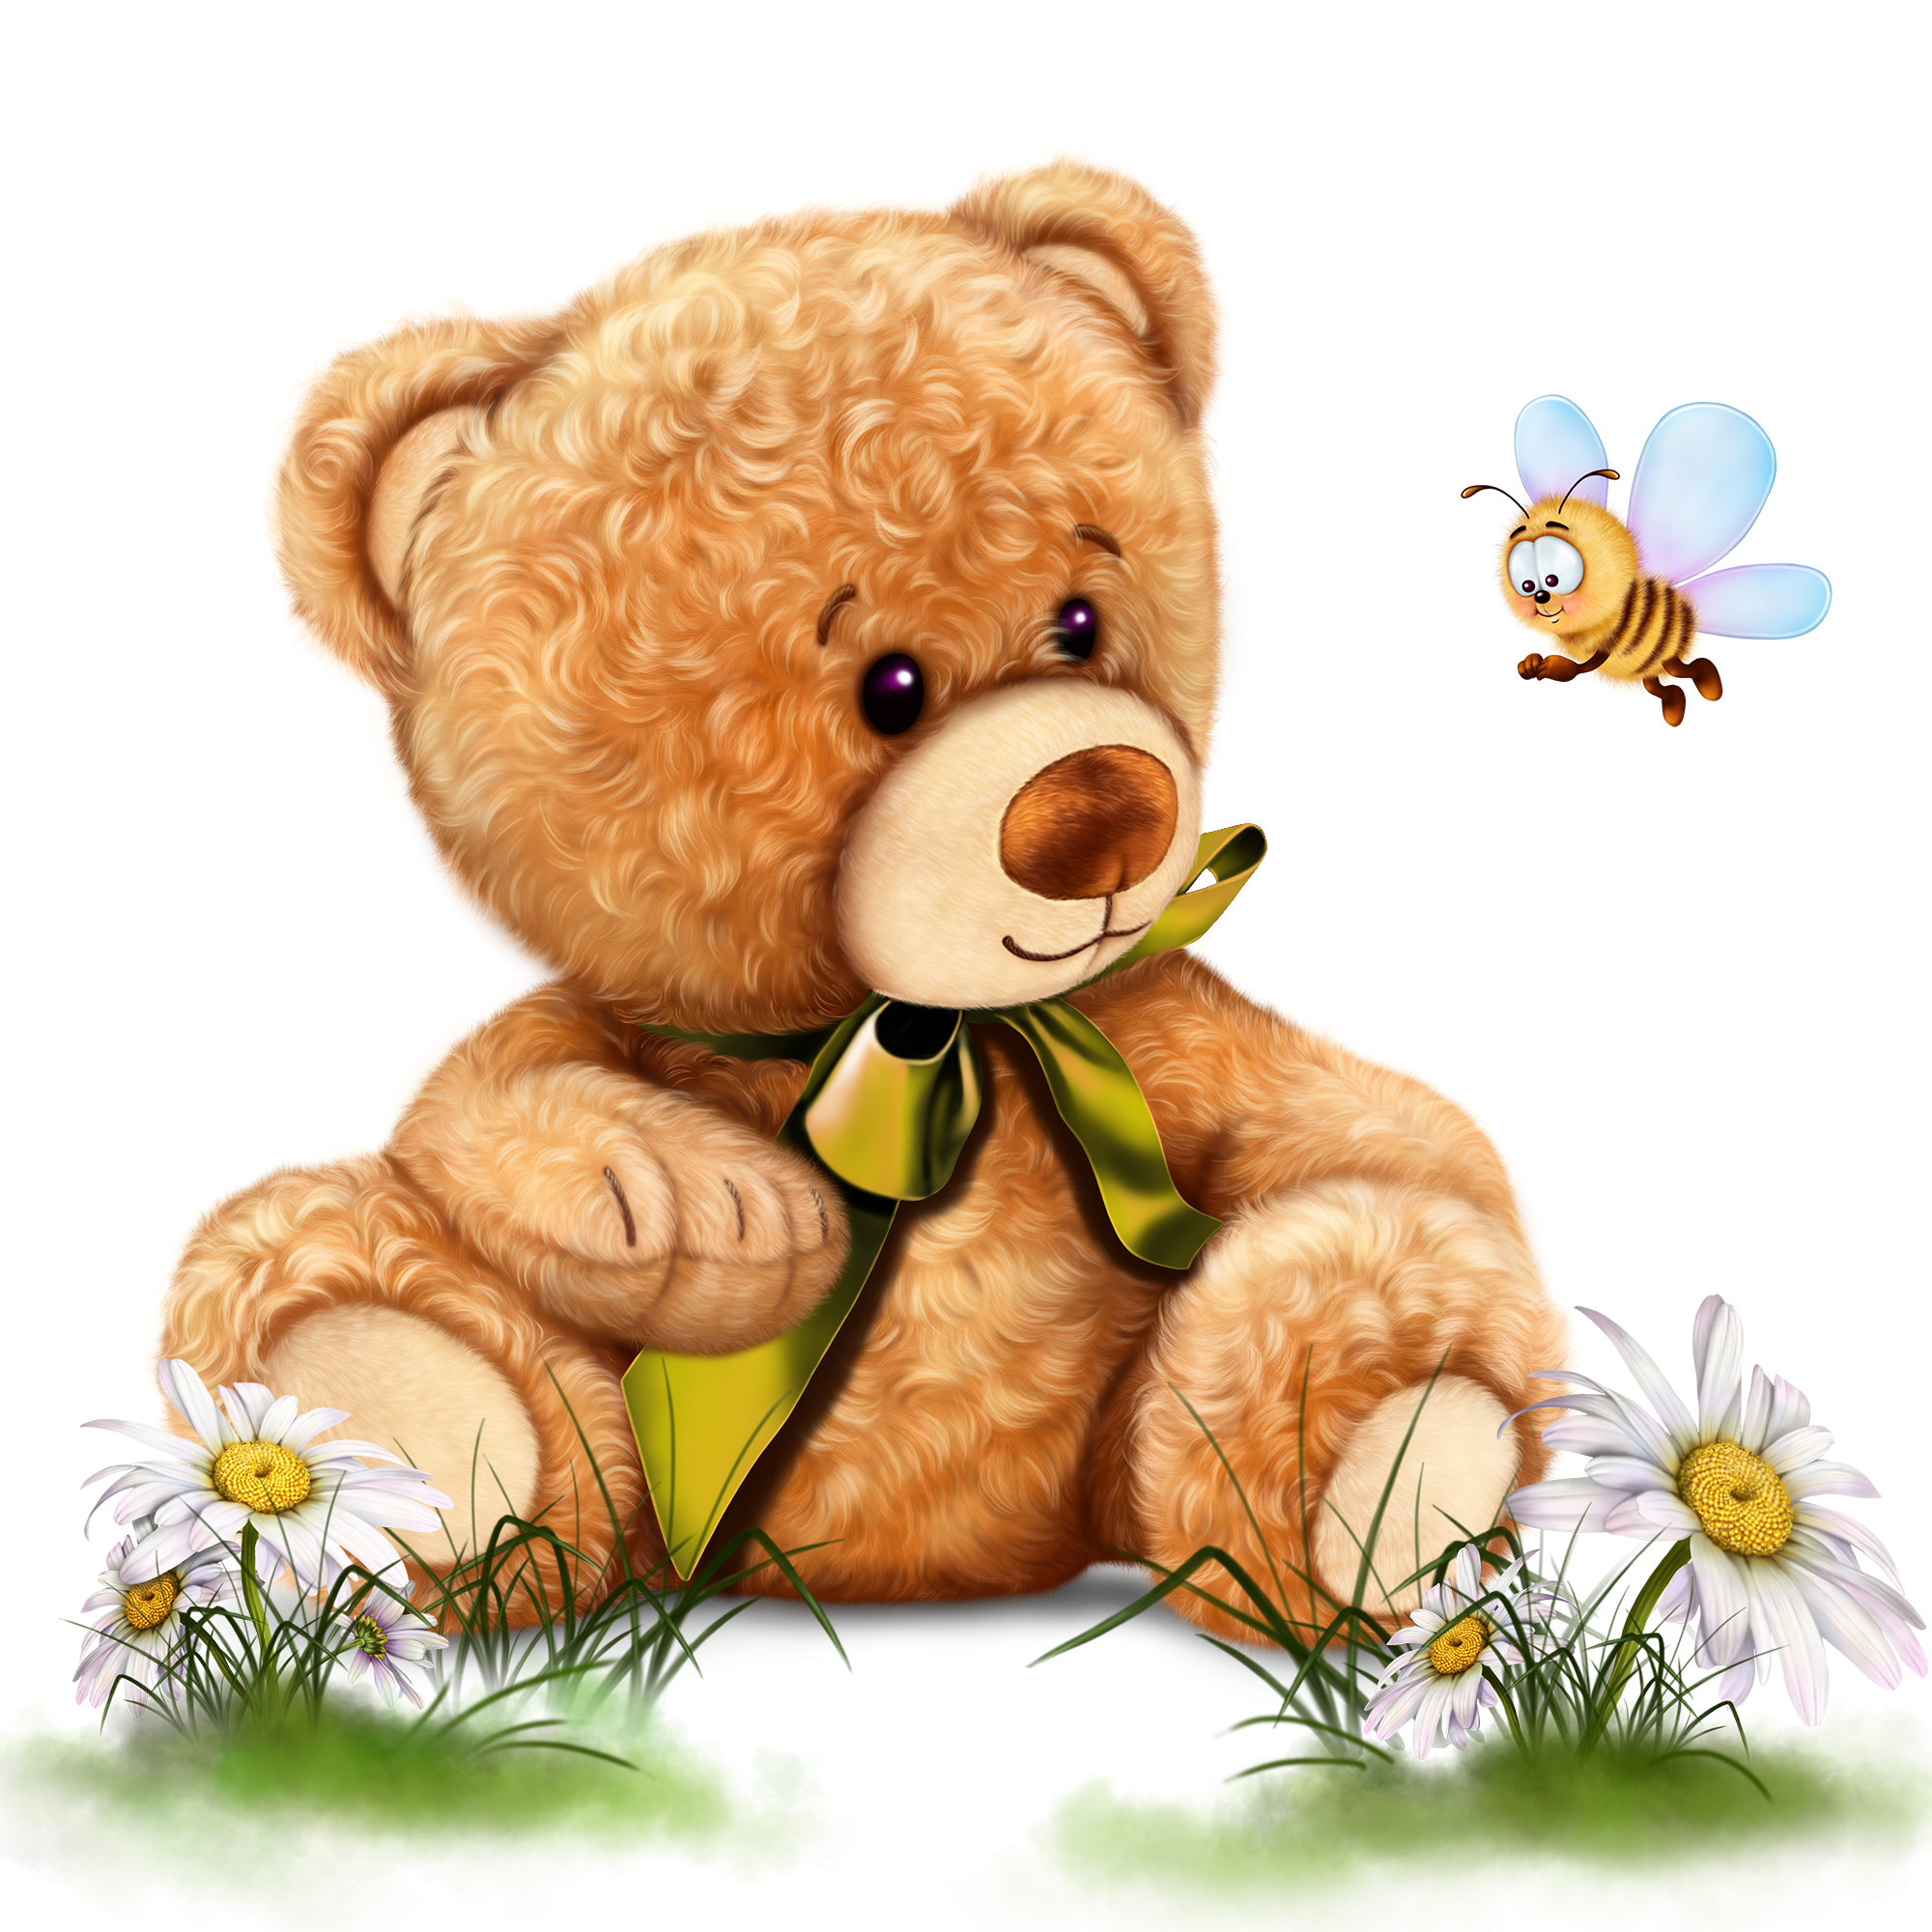 Медовый мишка 38. Медвежонок для детей. Медвежонок с медом. Медвежонок мультяшный. Медвежонок с бочонком меда.